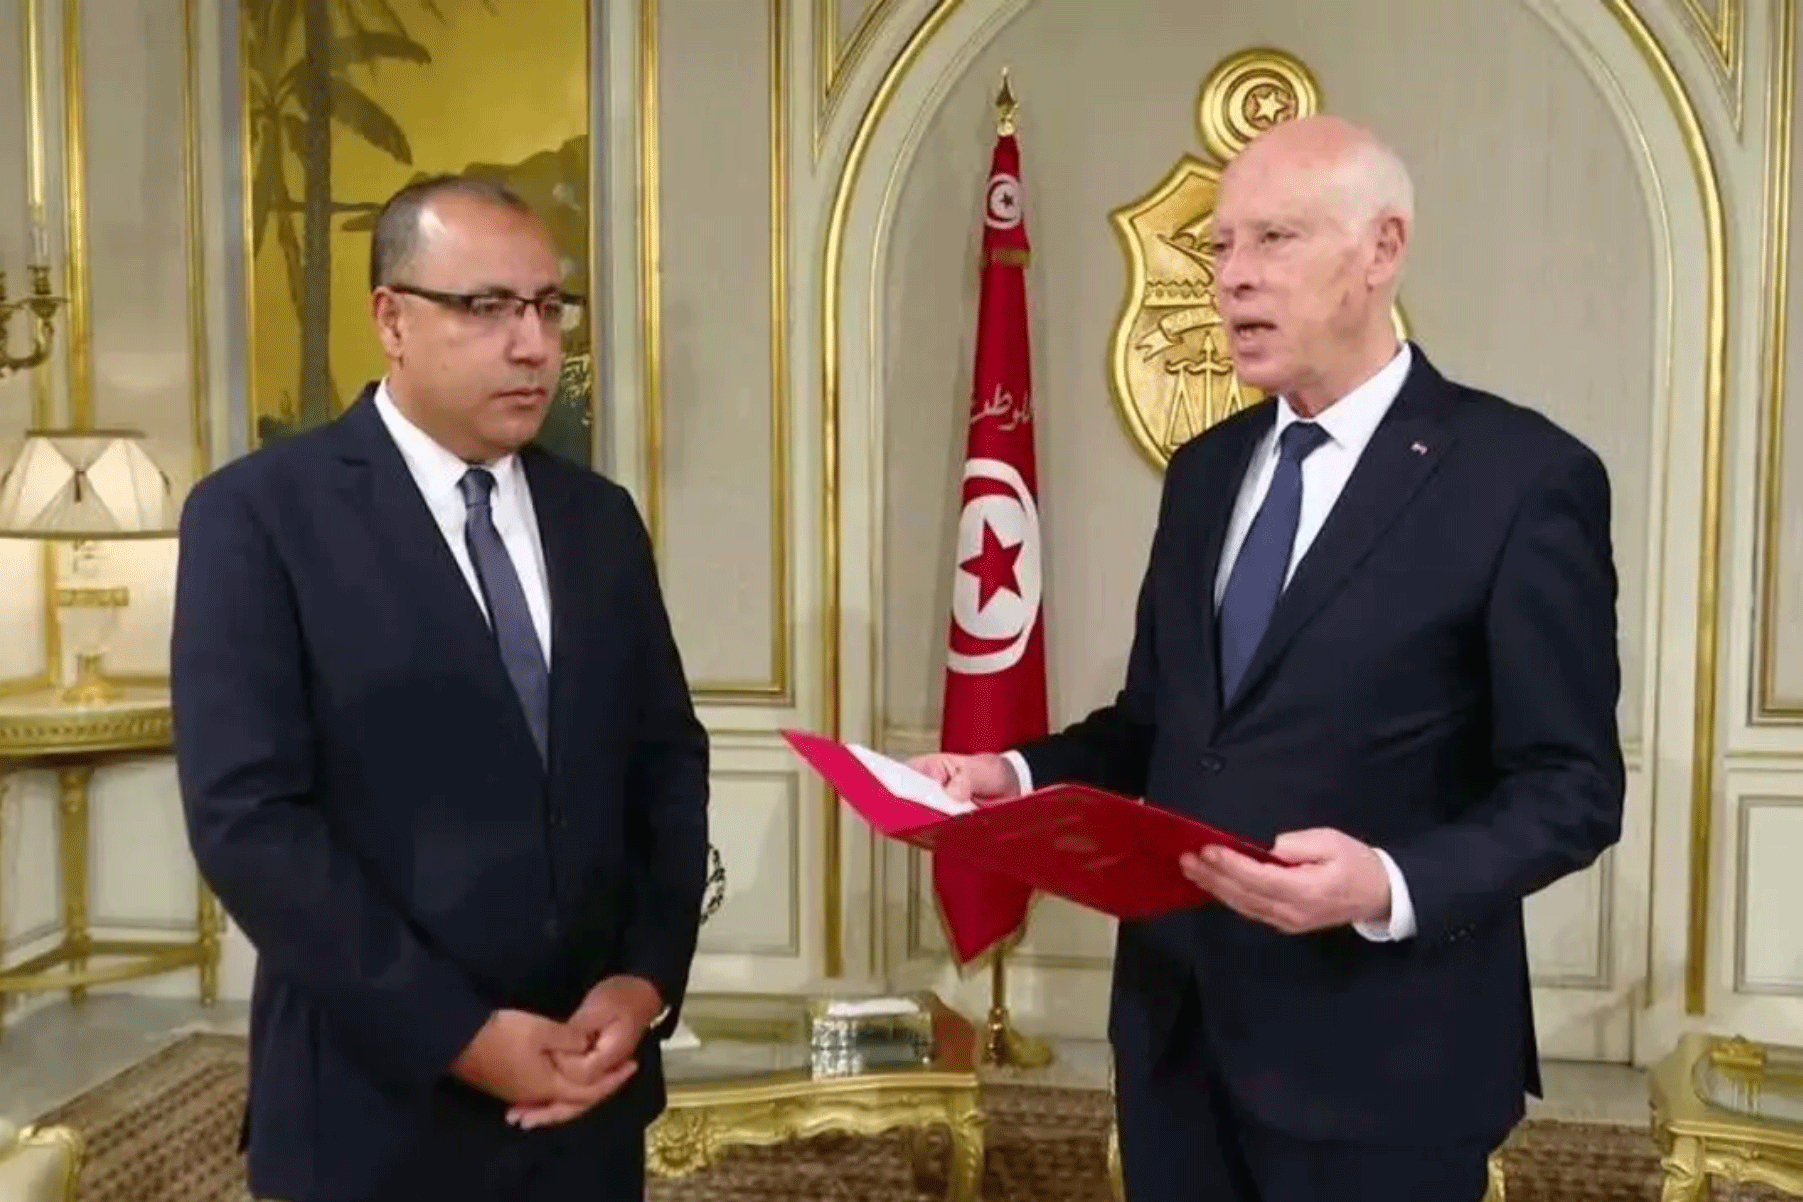 الرئيس قيس سعيد كلف السبت وزير الداخلية هشام المشيشي بتشكيل حكومة جديدة